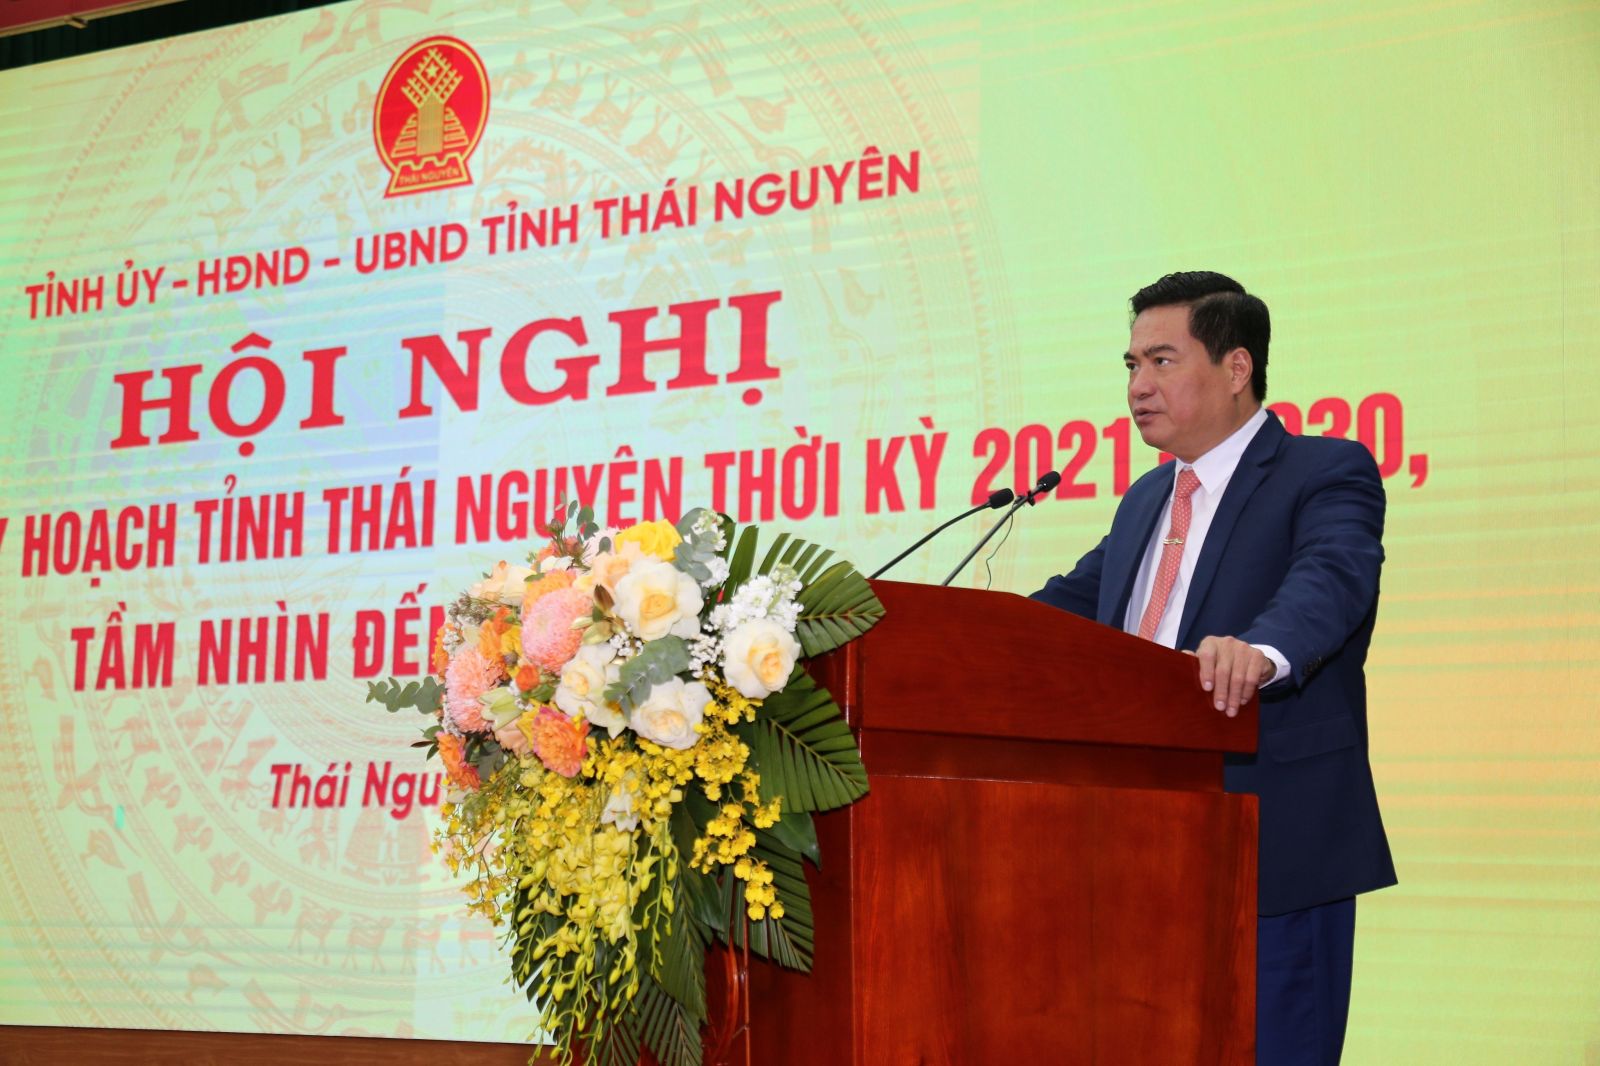 Ông Lê Quang Tiến - Phó Chủ tịch UBND tỉnh Thái Nguyên thừa ủy quyền của Thủ tướng Chính phủ đọc Quyết định phê duyệt Quy hoạch tỉnh Thái Nguyên thời kỳ 2021-2030, tầm nhìn đến năm 2050.